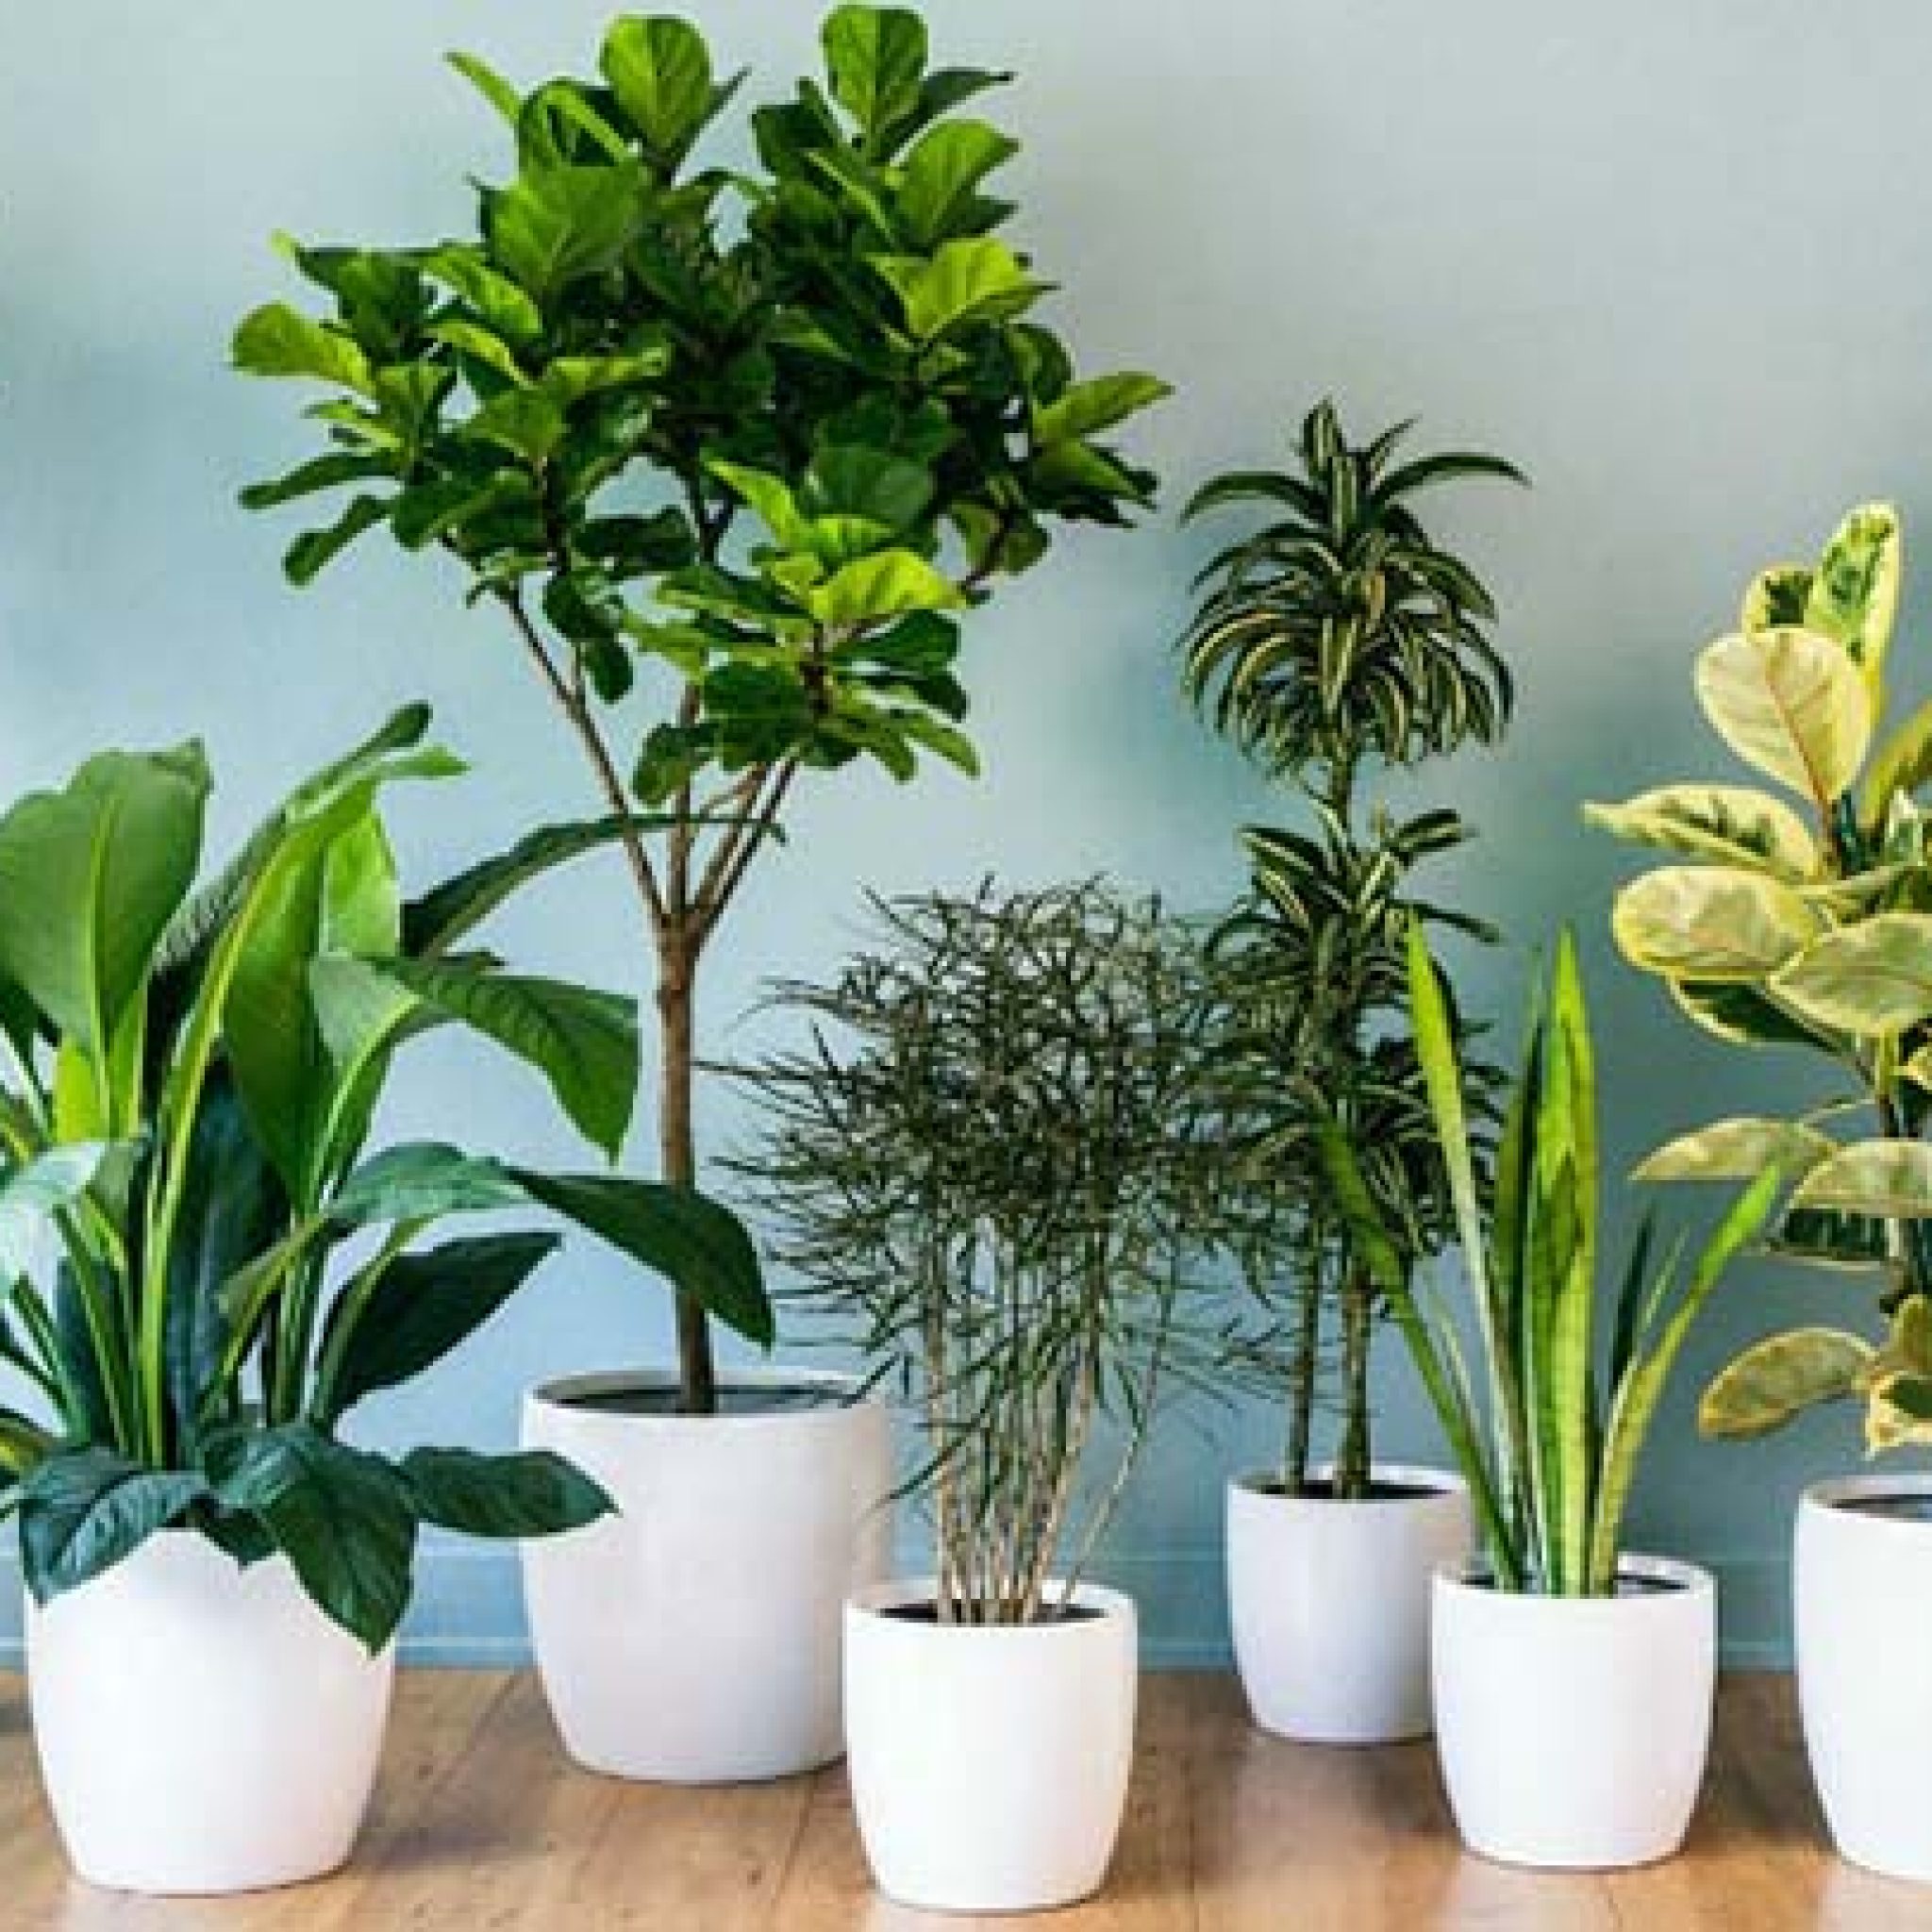 Plantas para purificar el aire dentro de casa